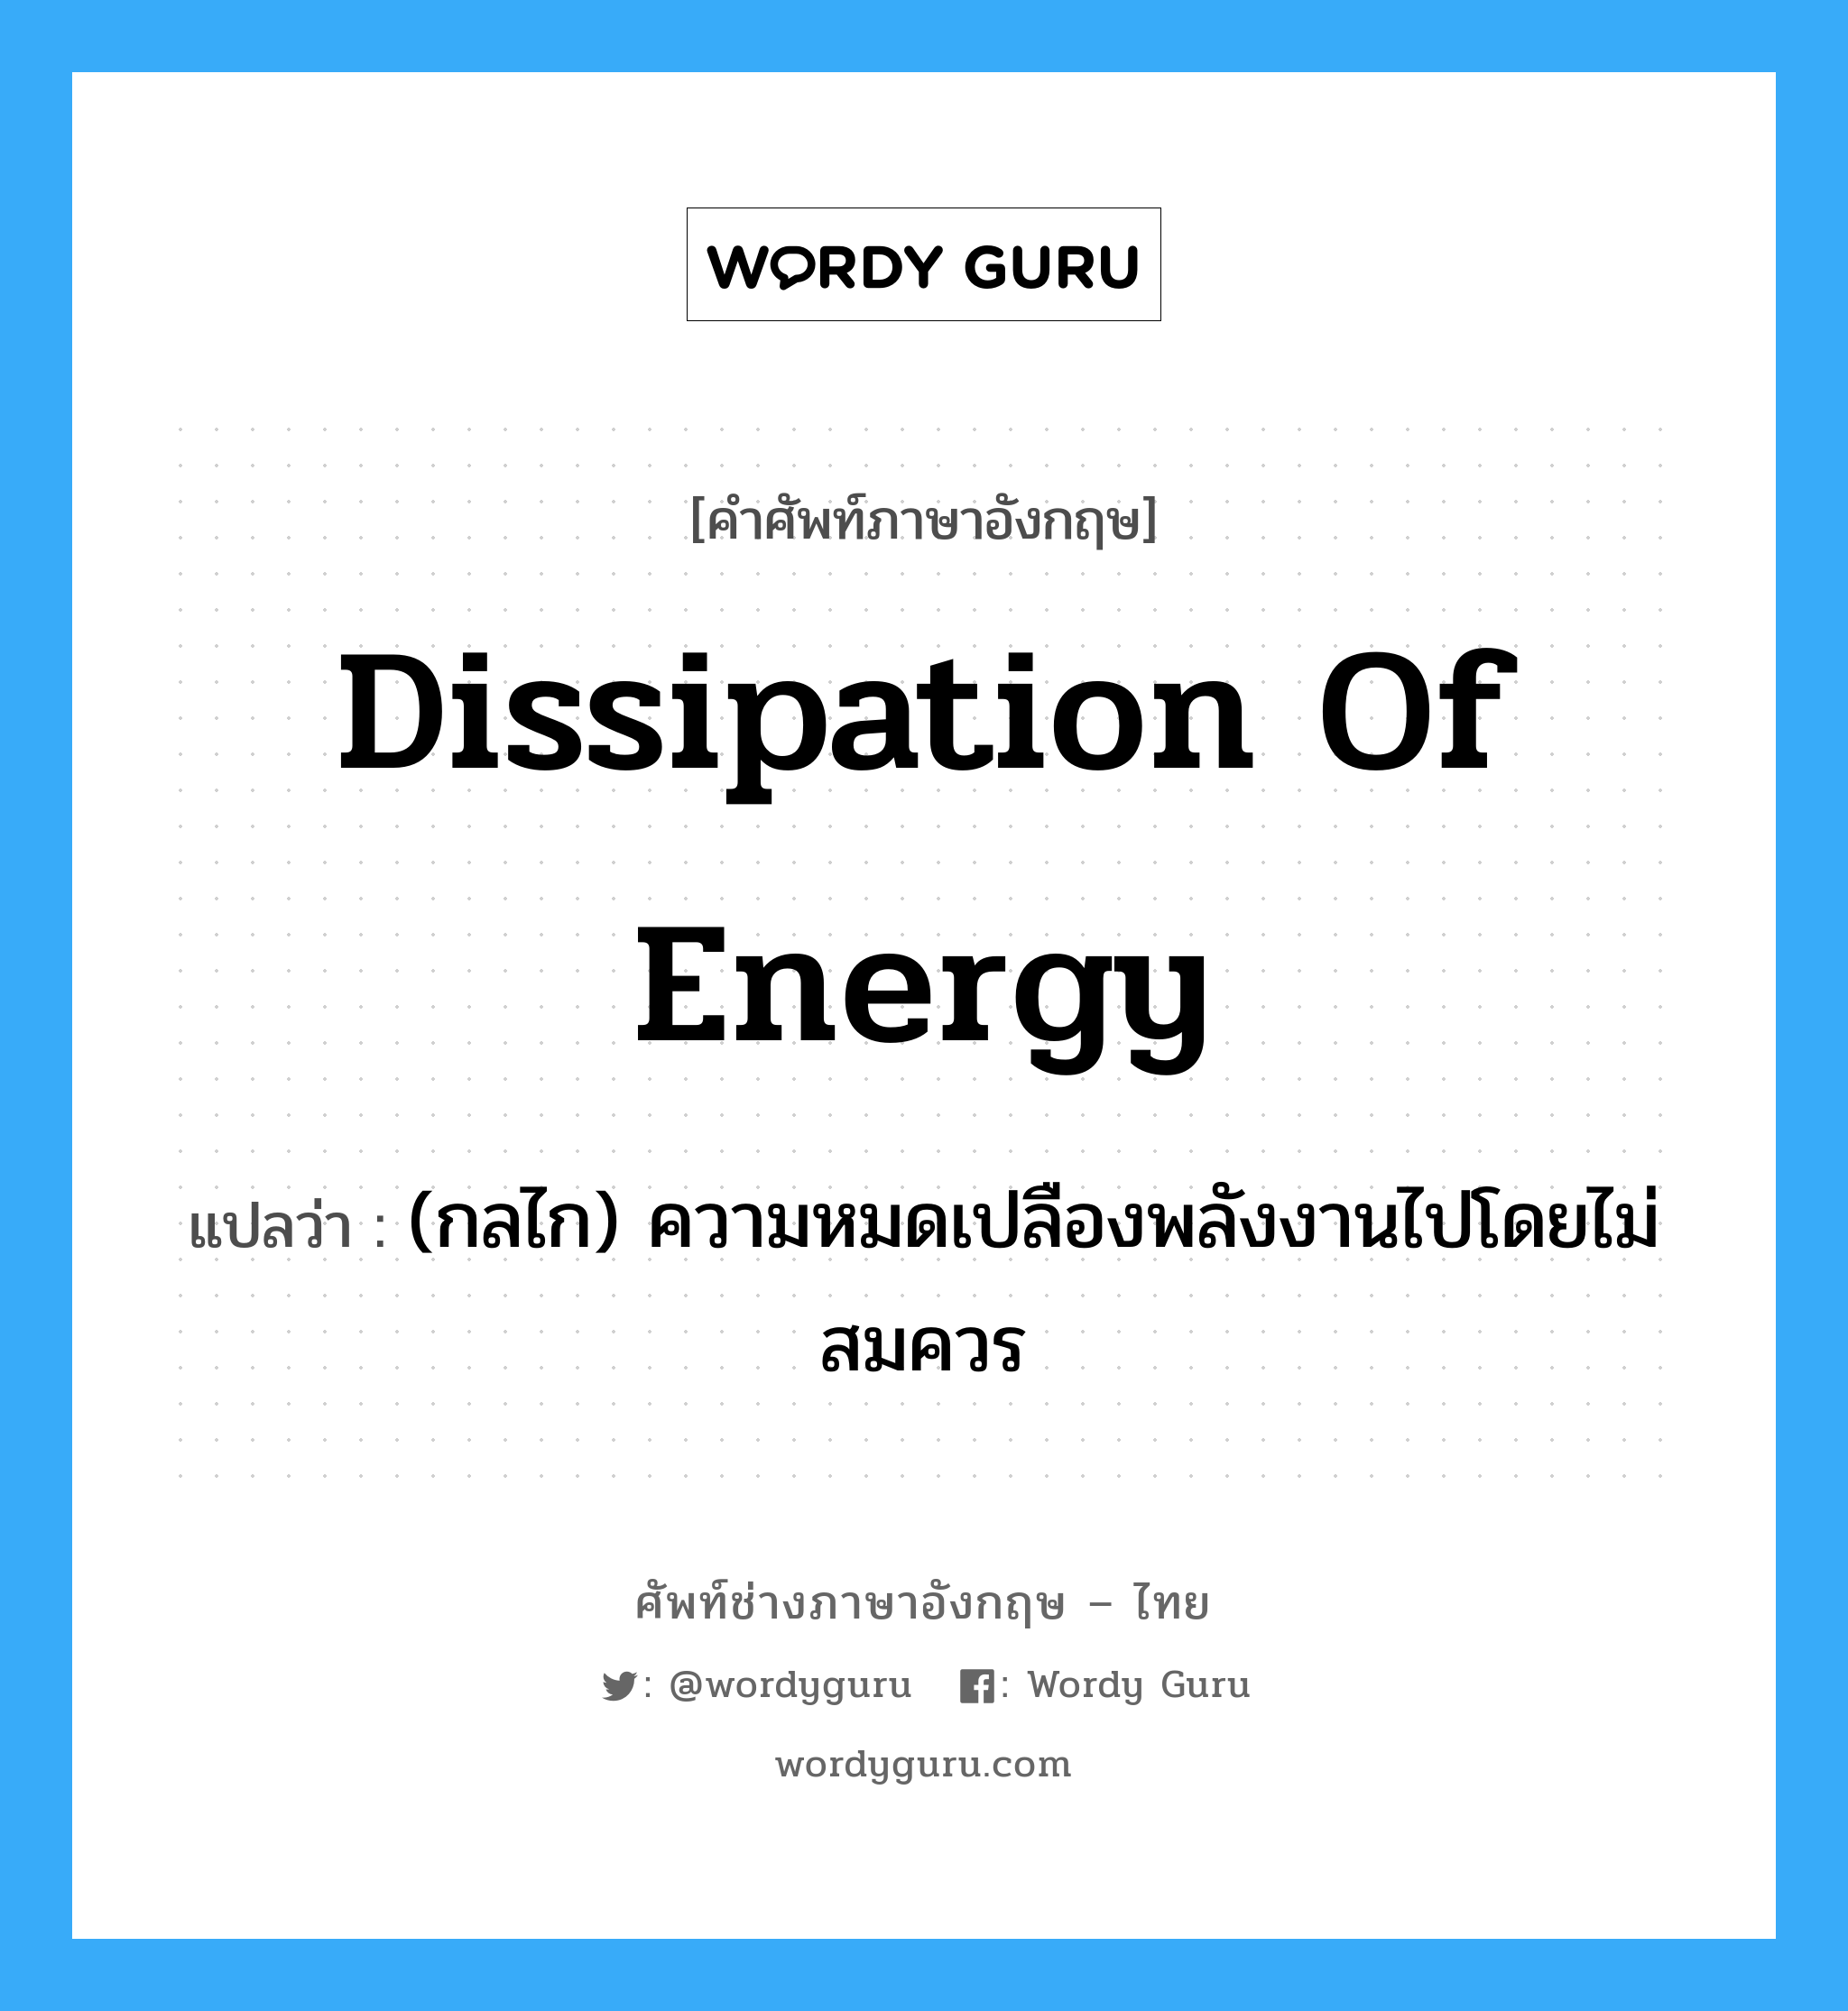 dissipation of energy แปลว่า?, คำศัพท์ช่างภาษาอังกฤษ - ไทย dissipation of energy คำศัพท์ภาษาอังกฤษ dissipation of energy แปลว่า (กลไก) ความหมดเปลืองพลังงานไปโดยไม่สมควร